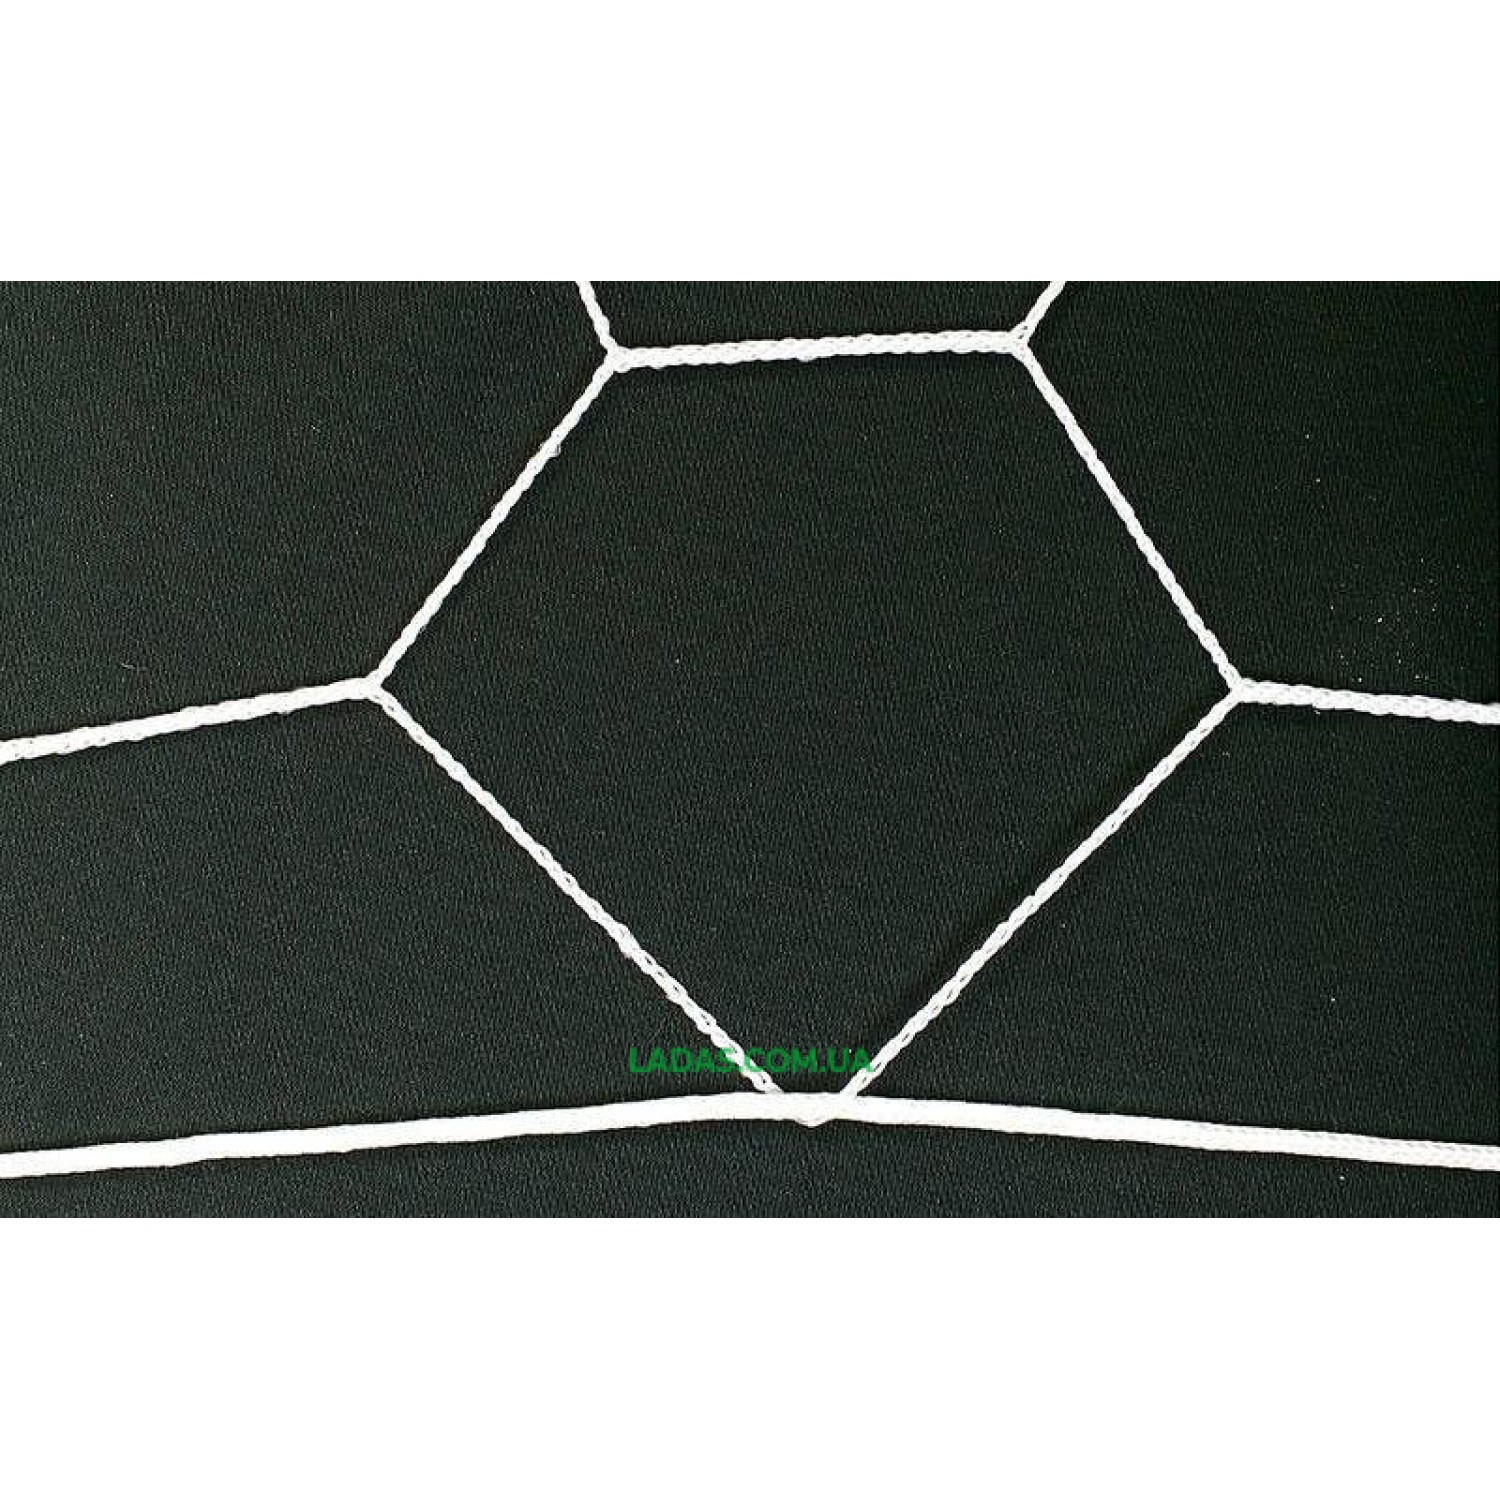 Сетка на ворота футбольные тренировочная безузловая (2шт) Трапеция (нить 2,5мм, ячейка 7,5x7,5см, р-р 7,4*2,5)